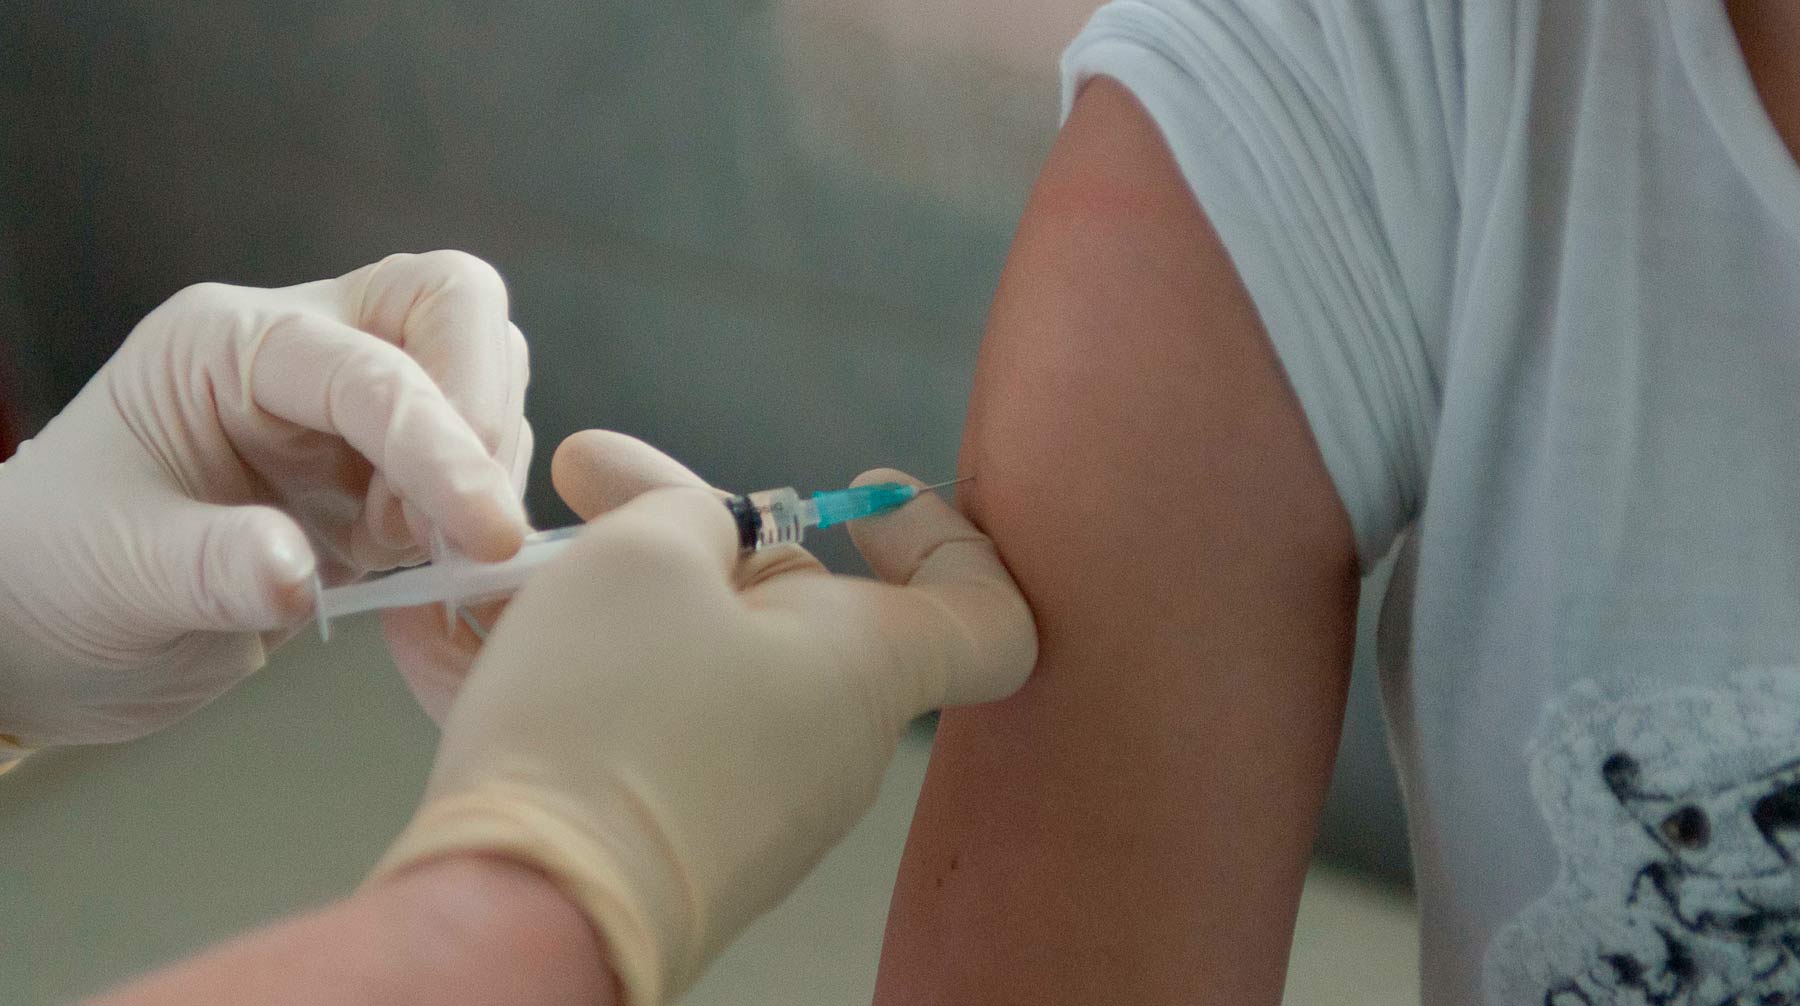 Причиной заболеваемости стал отказ родителей делать детям прививки, заявил член президиума РАЕН Виктор Зуев Фото: © Global Look Press / Mikhail Pletsky